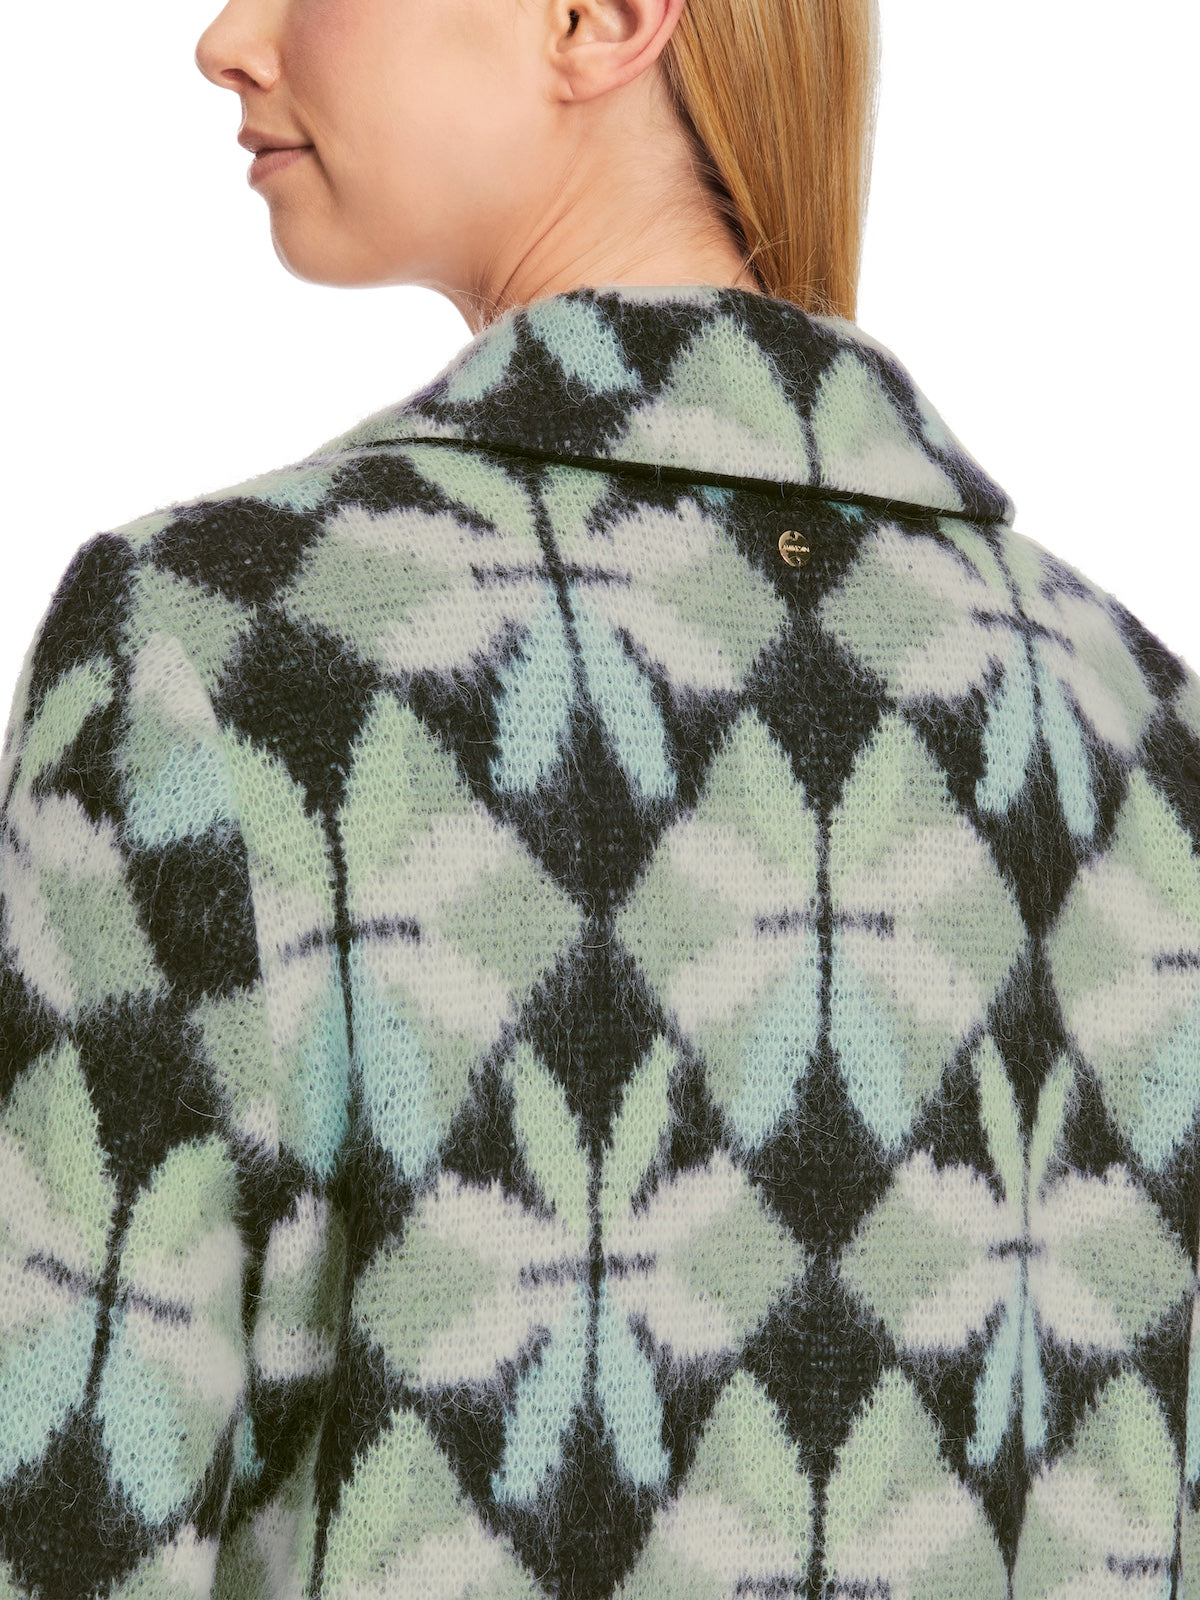 Frozen Sage Heartfoil Patterned Wool Blend Coat